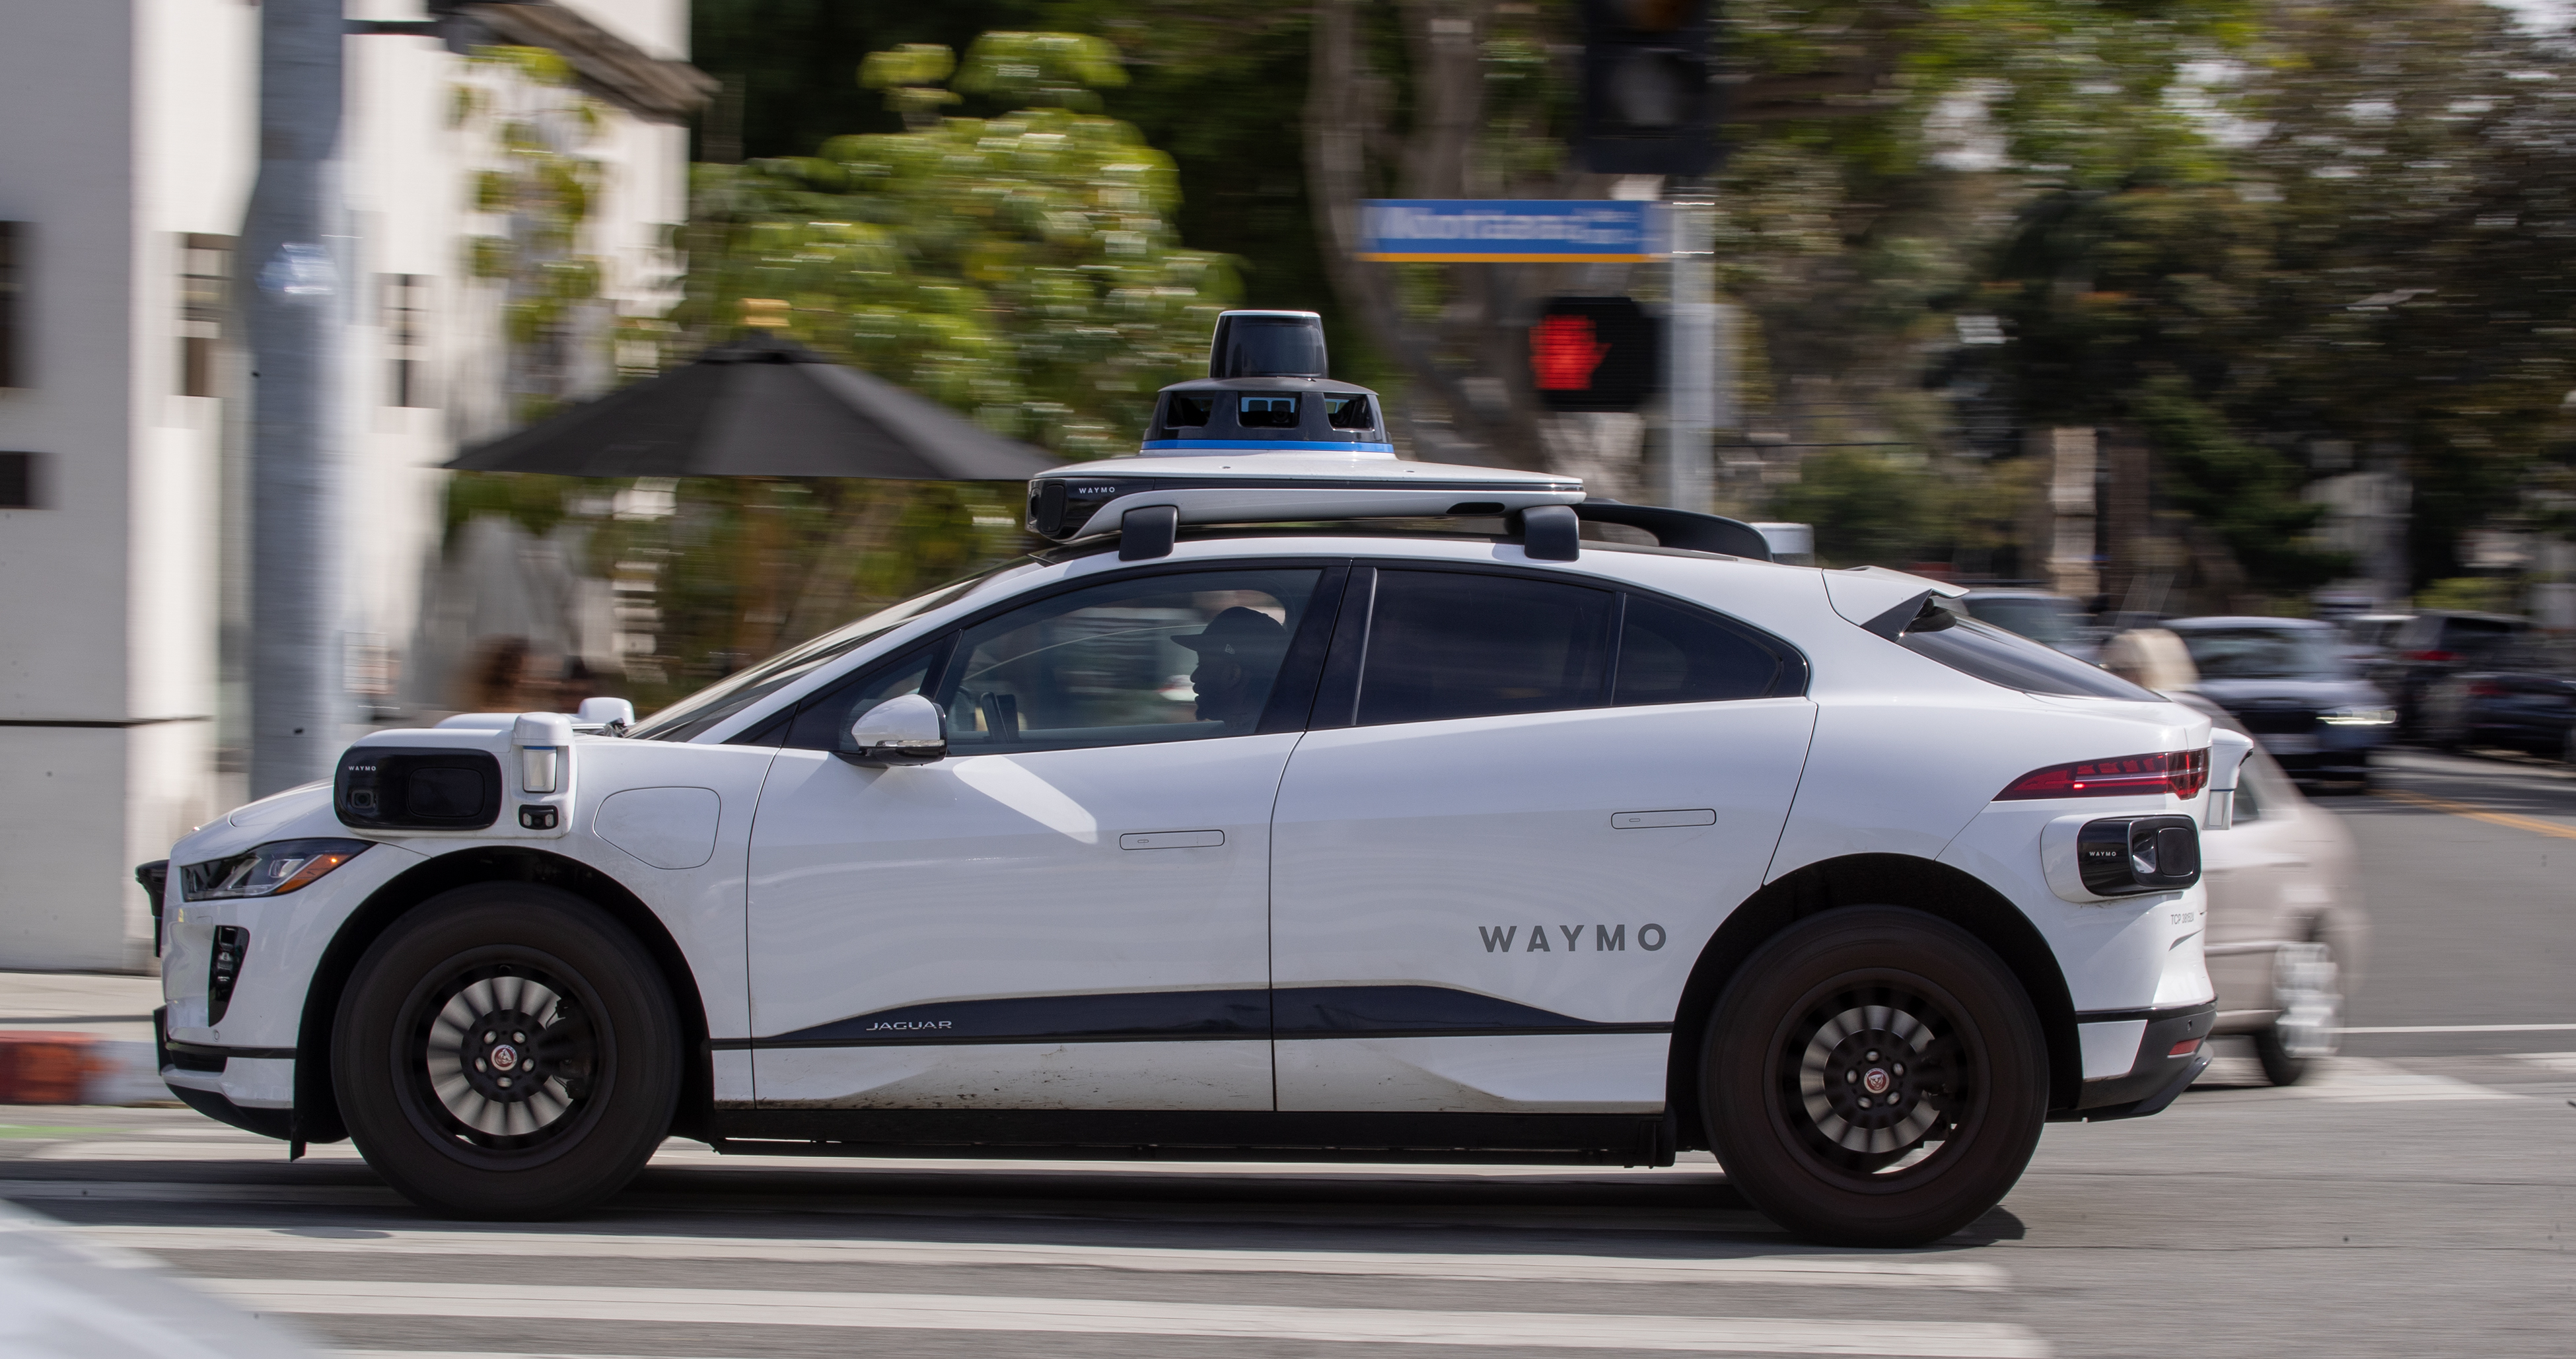 Santa Monica'da ağaçlarla çevrili bir caddede çalışan Waymo otonom aracı.